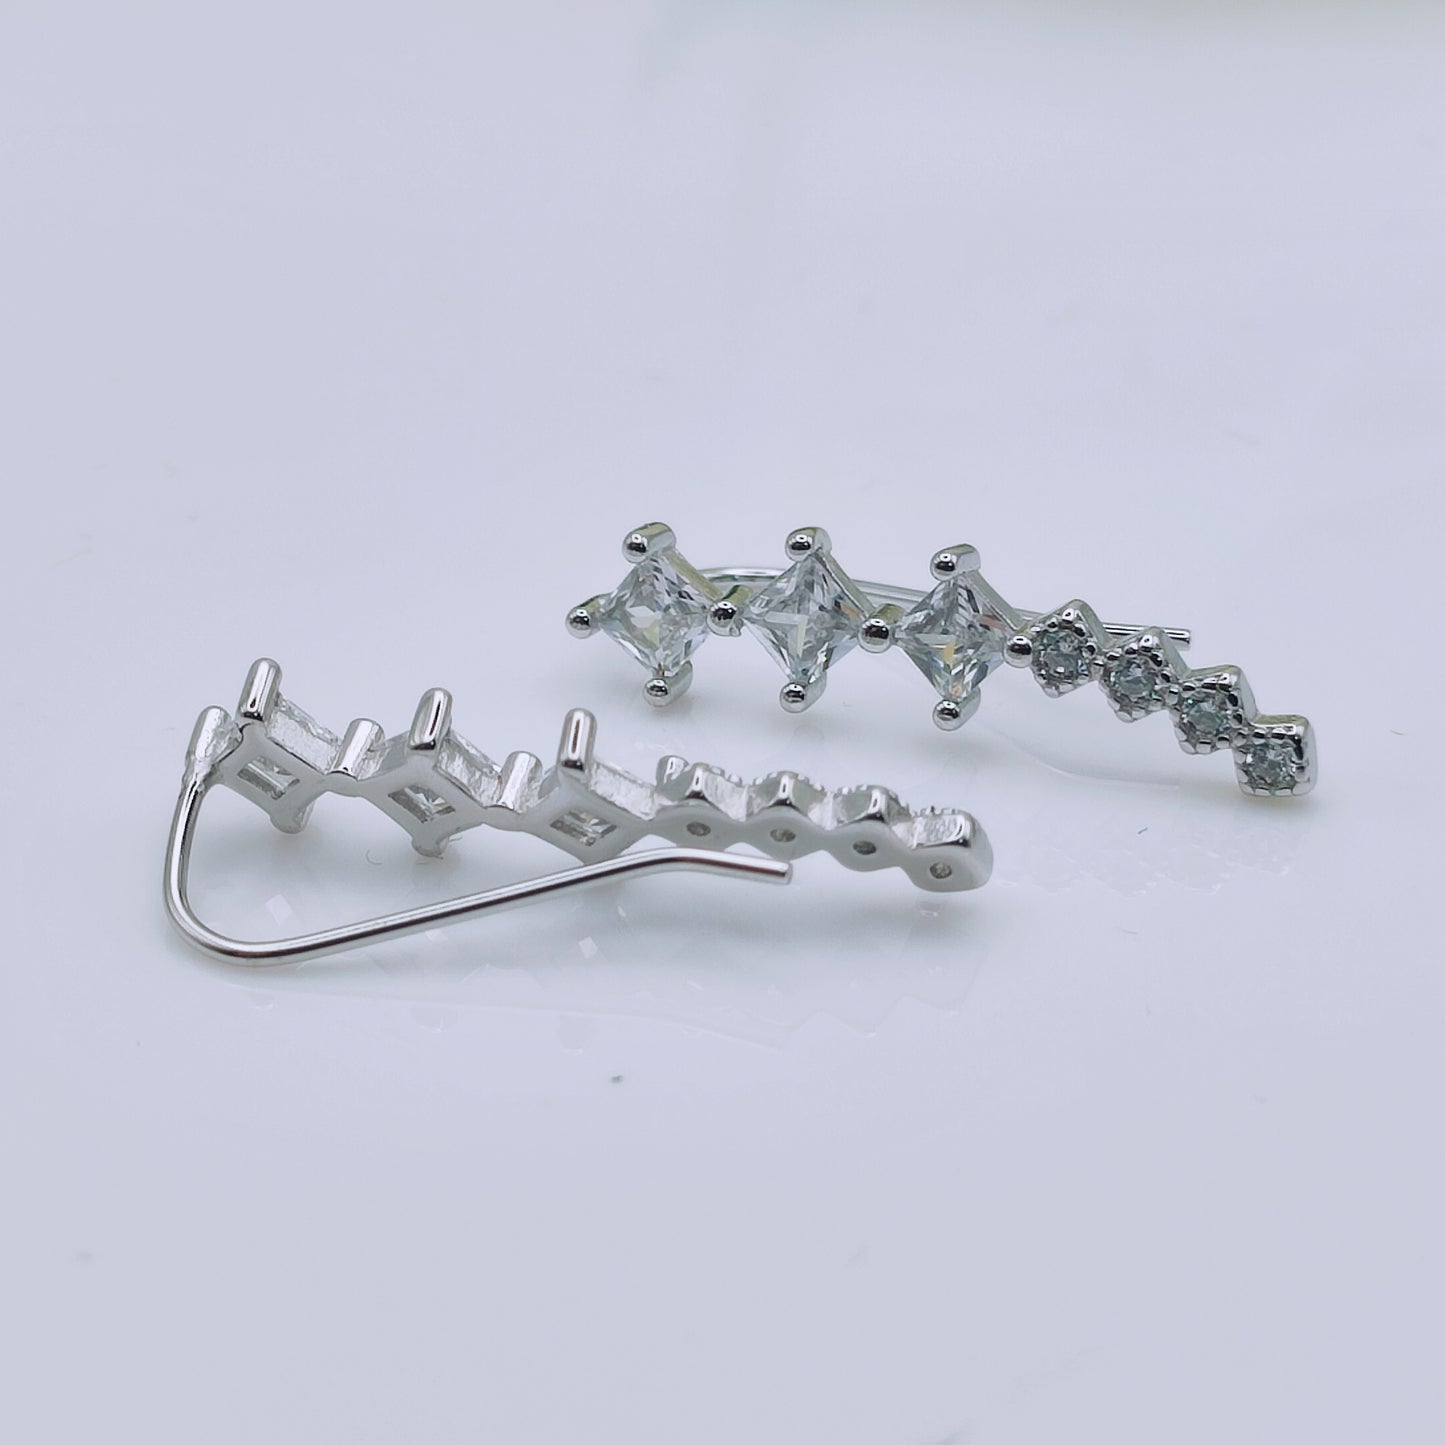 925 Sterling Silver Crystal Ear Cuffs Earrings - Mia Ishaaq